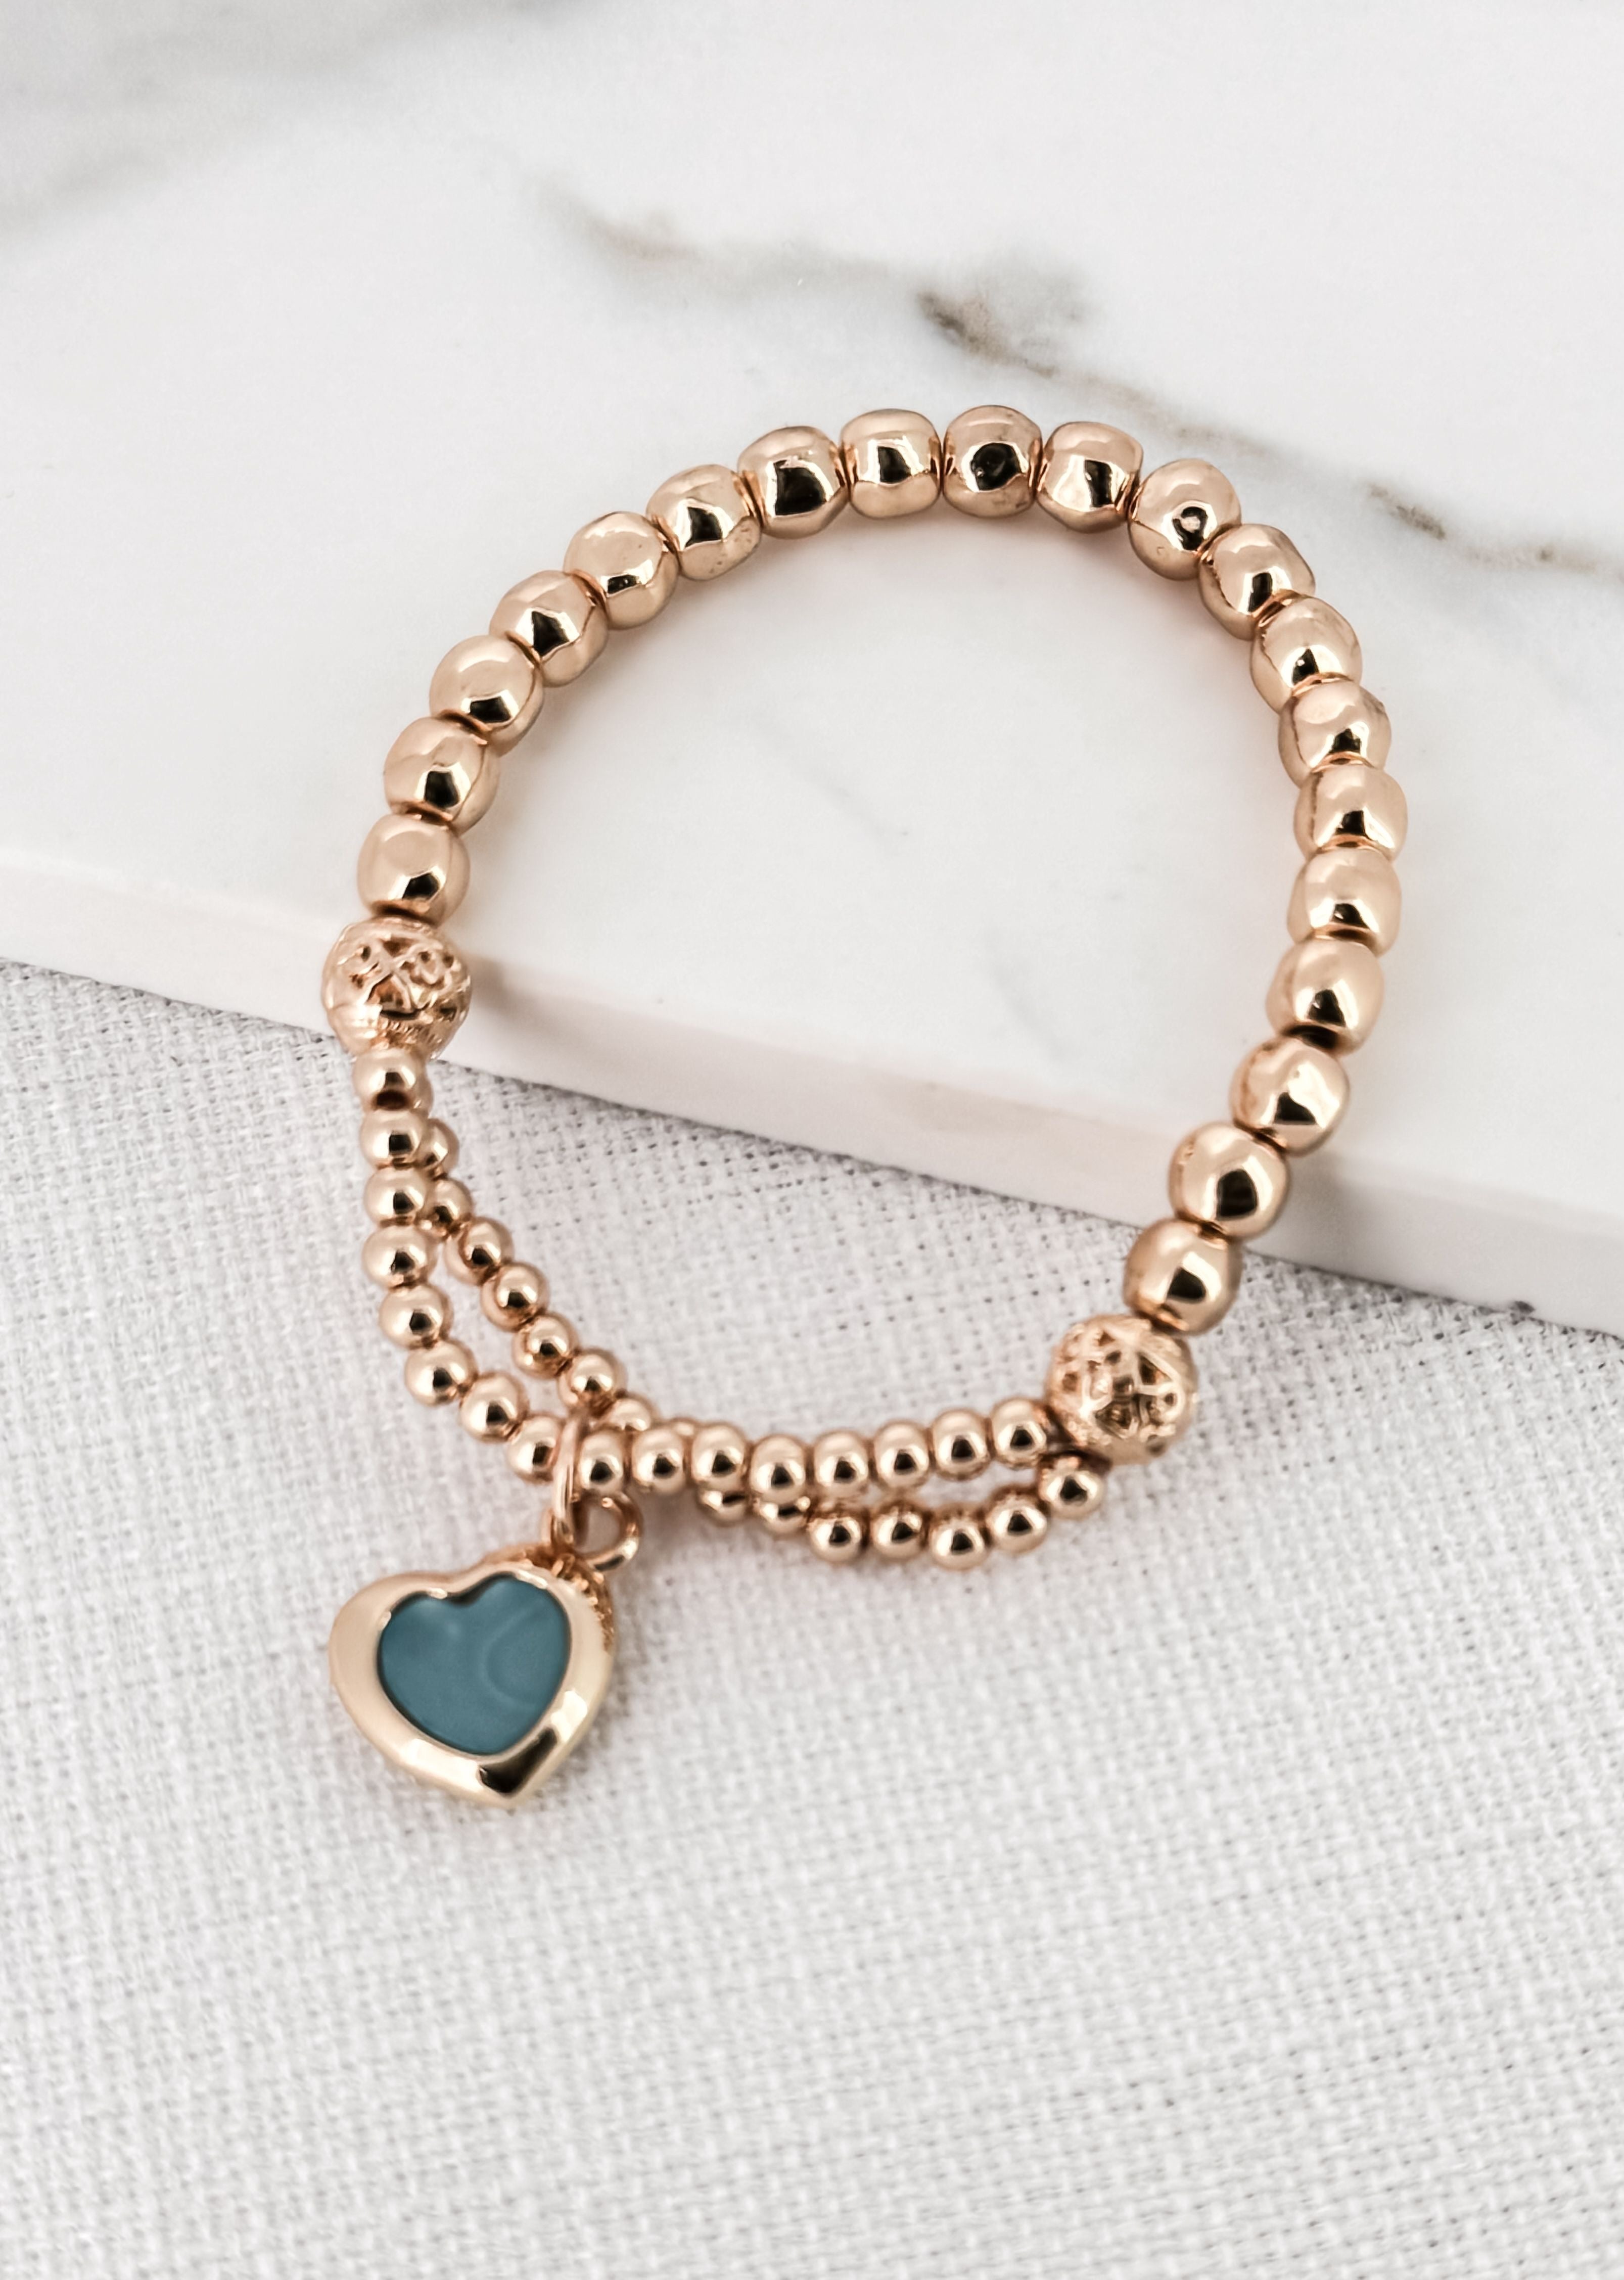 Turquoise Heart Pendant Bracelet in Gold